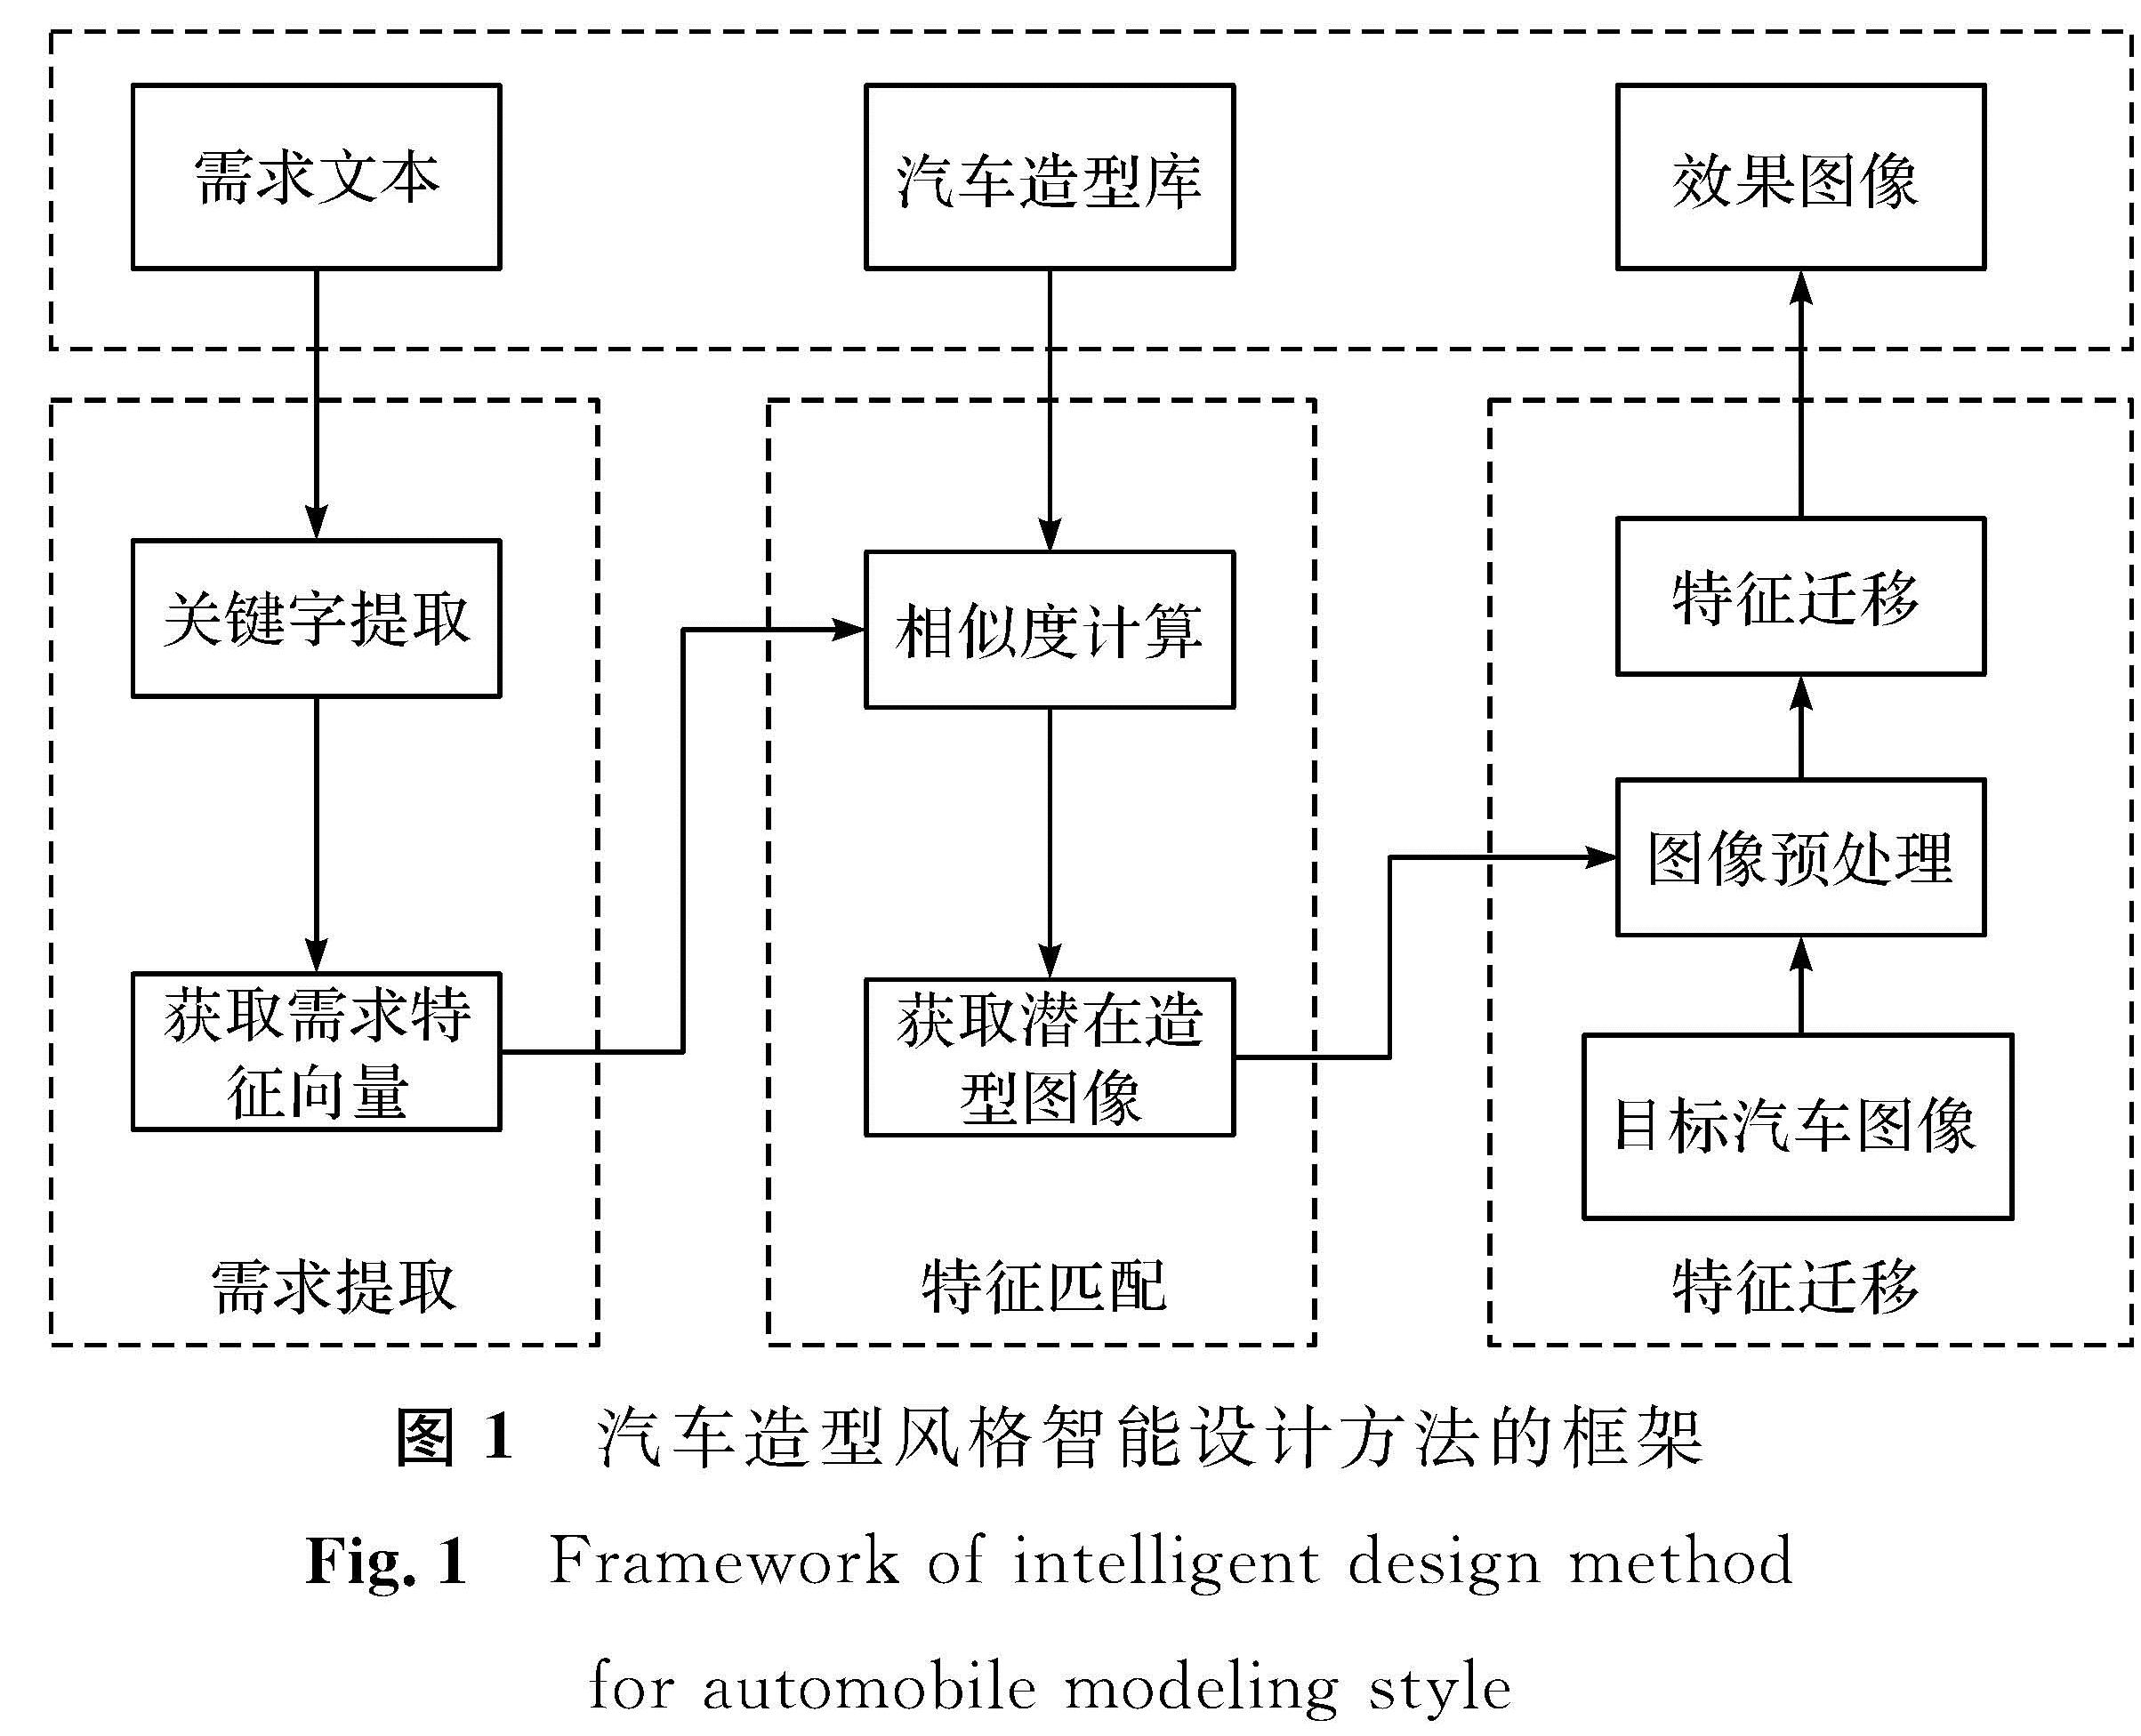 图1 汽车造型风格智能设计方法的框架<br/>Fig.1 Framework of intelligent design method for automobile modeling style